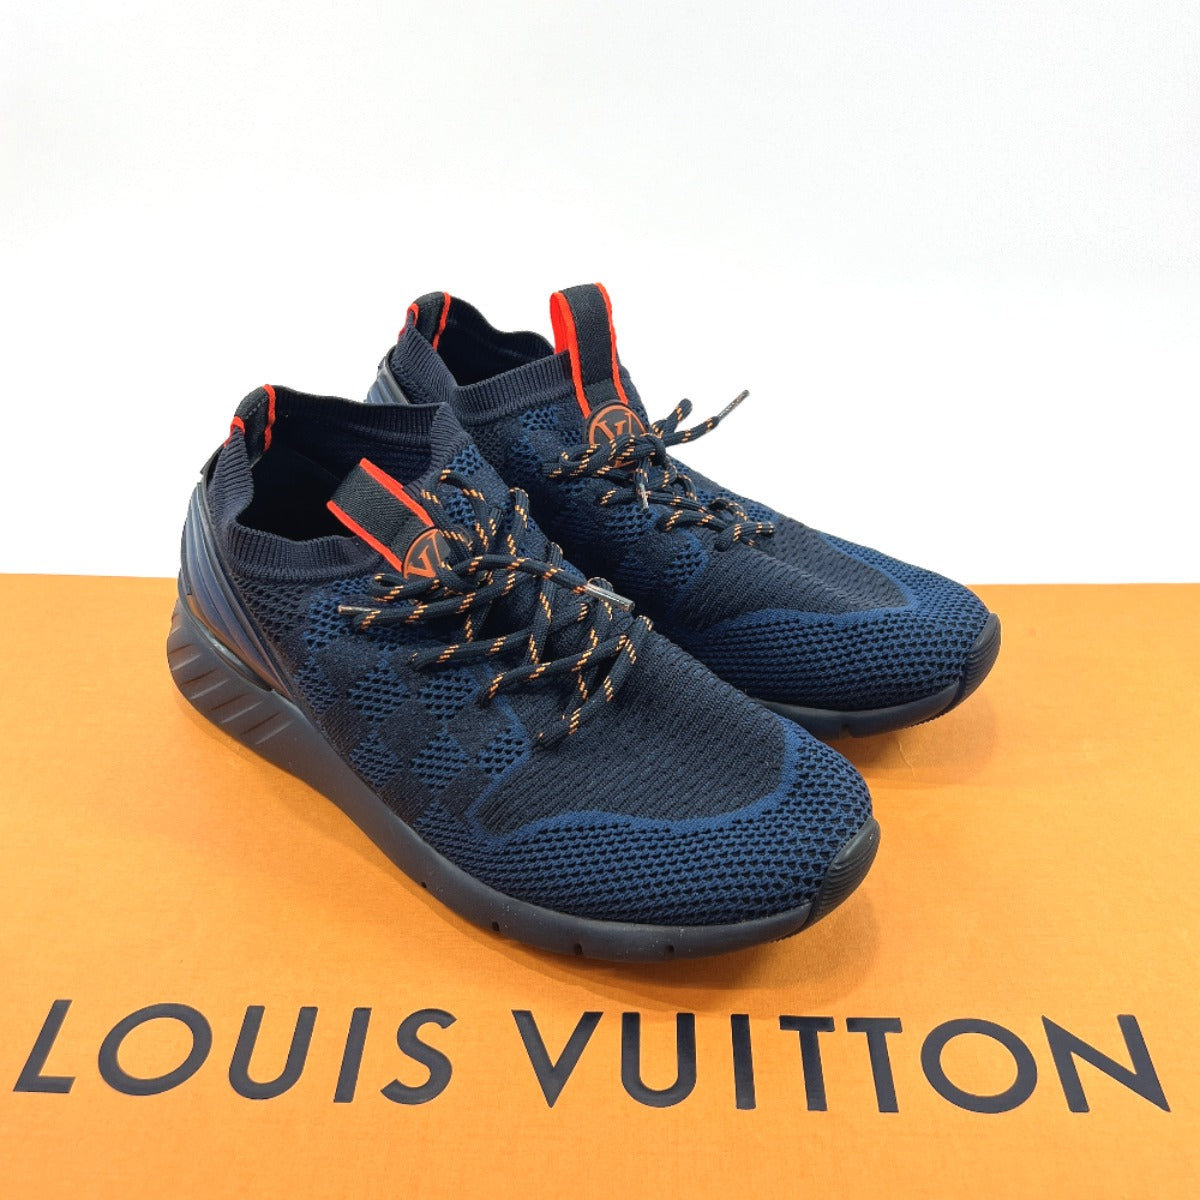 Louis Vuitton Fastlane Sneakers, Men's Fashion, Footwear, Sneakers